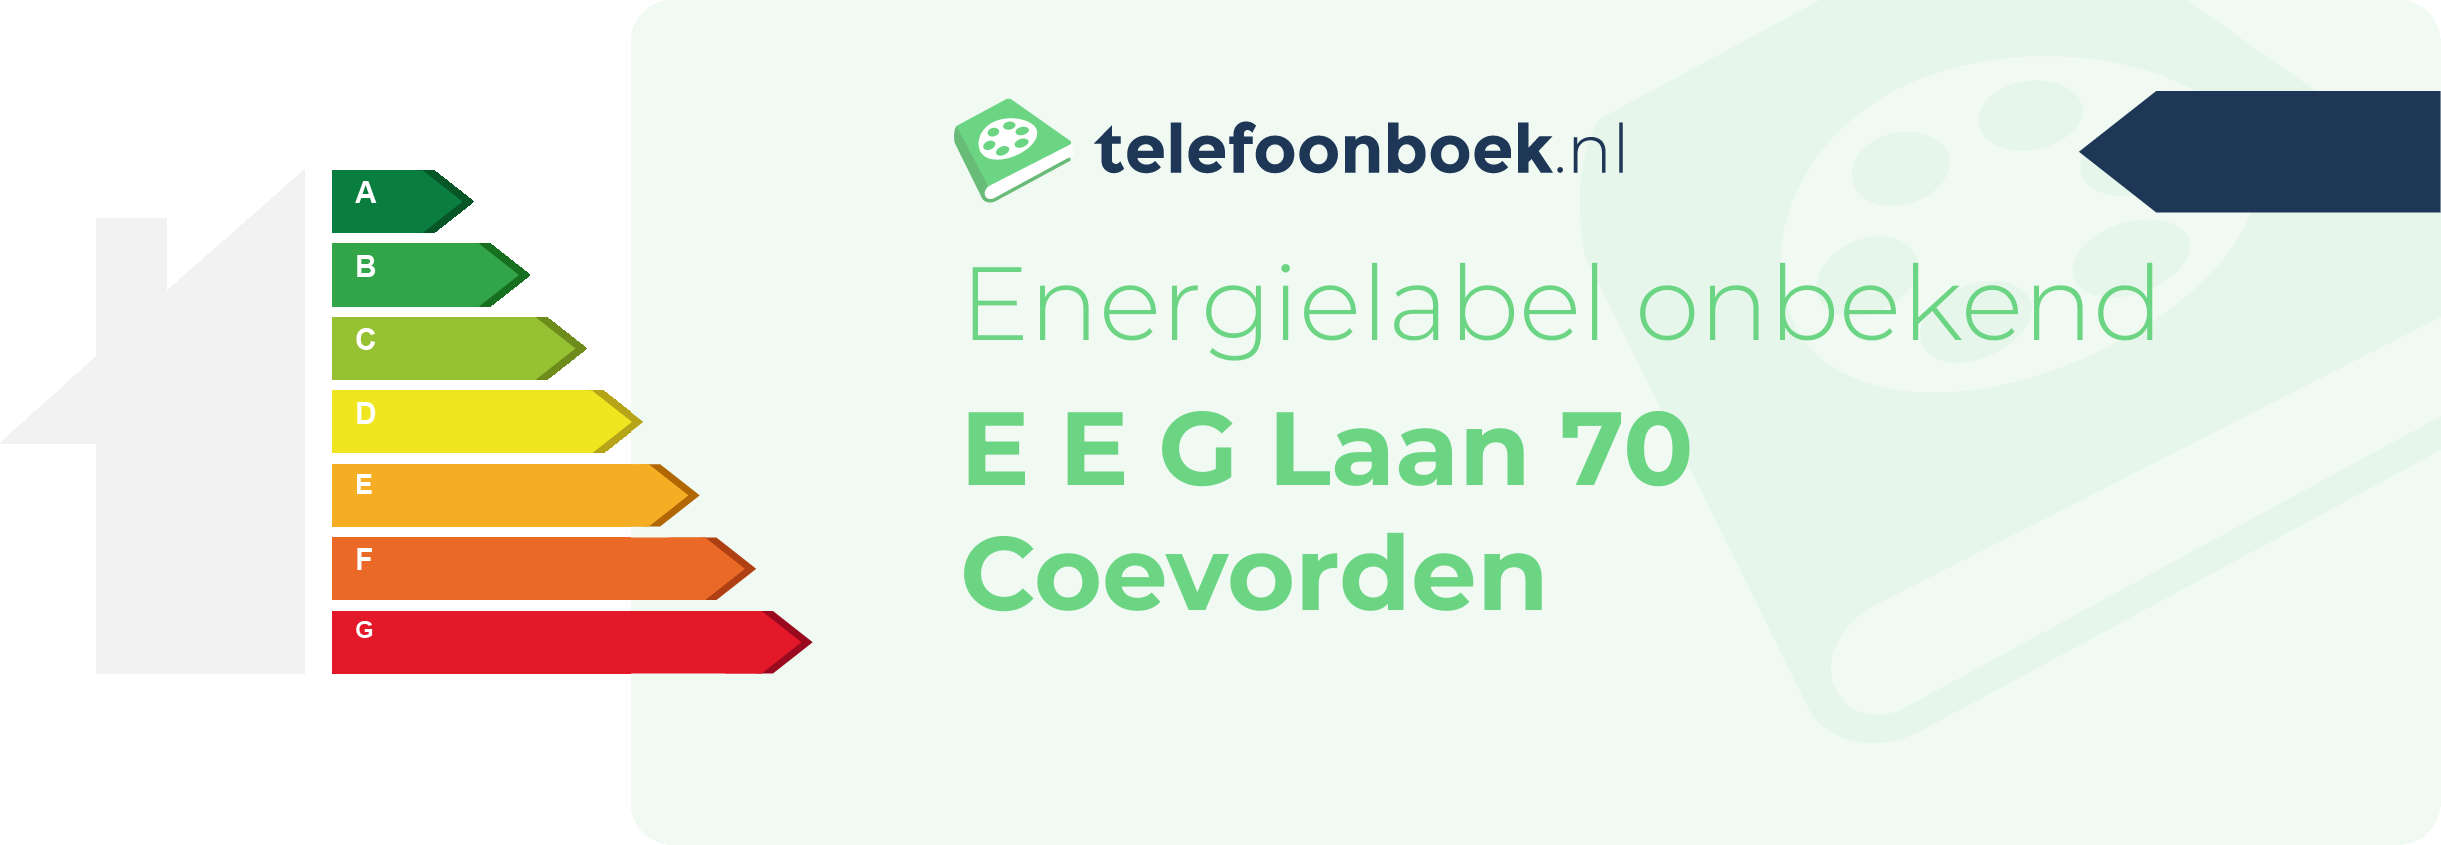 Energielabel E E G Laan 70 Coevorden